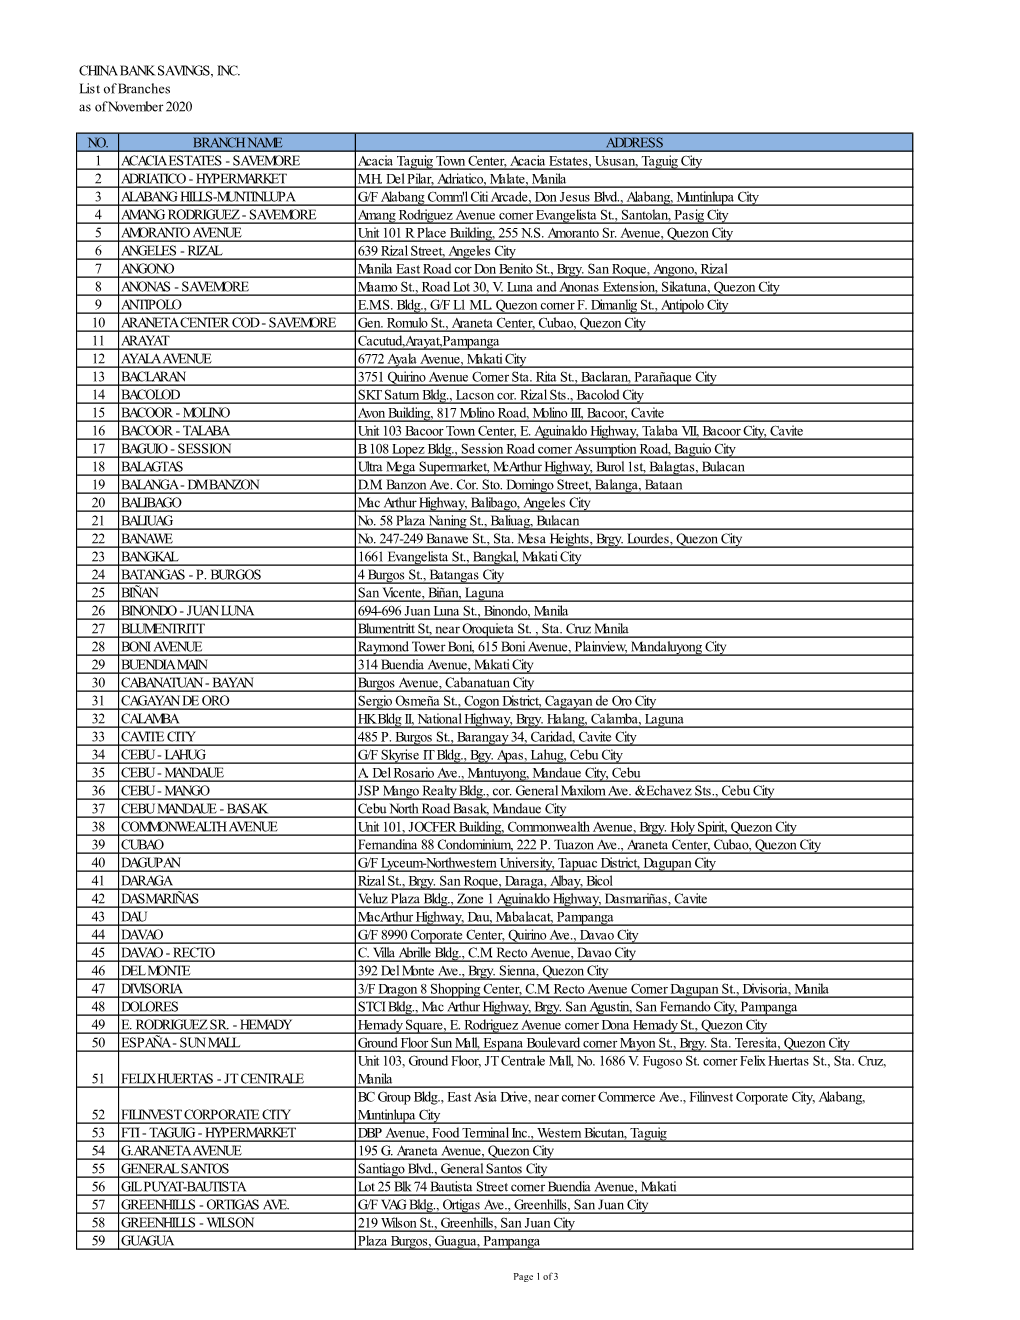 CHINA BANK SAVINGS, INC. List of Branches As of November 2020